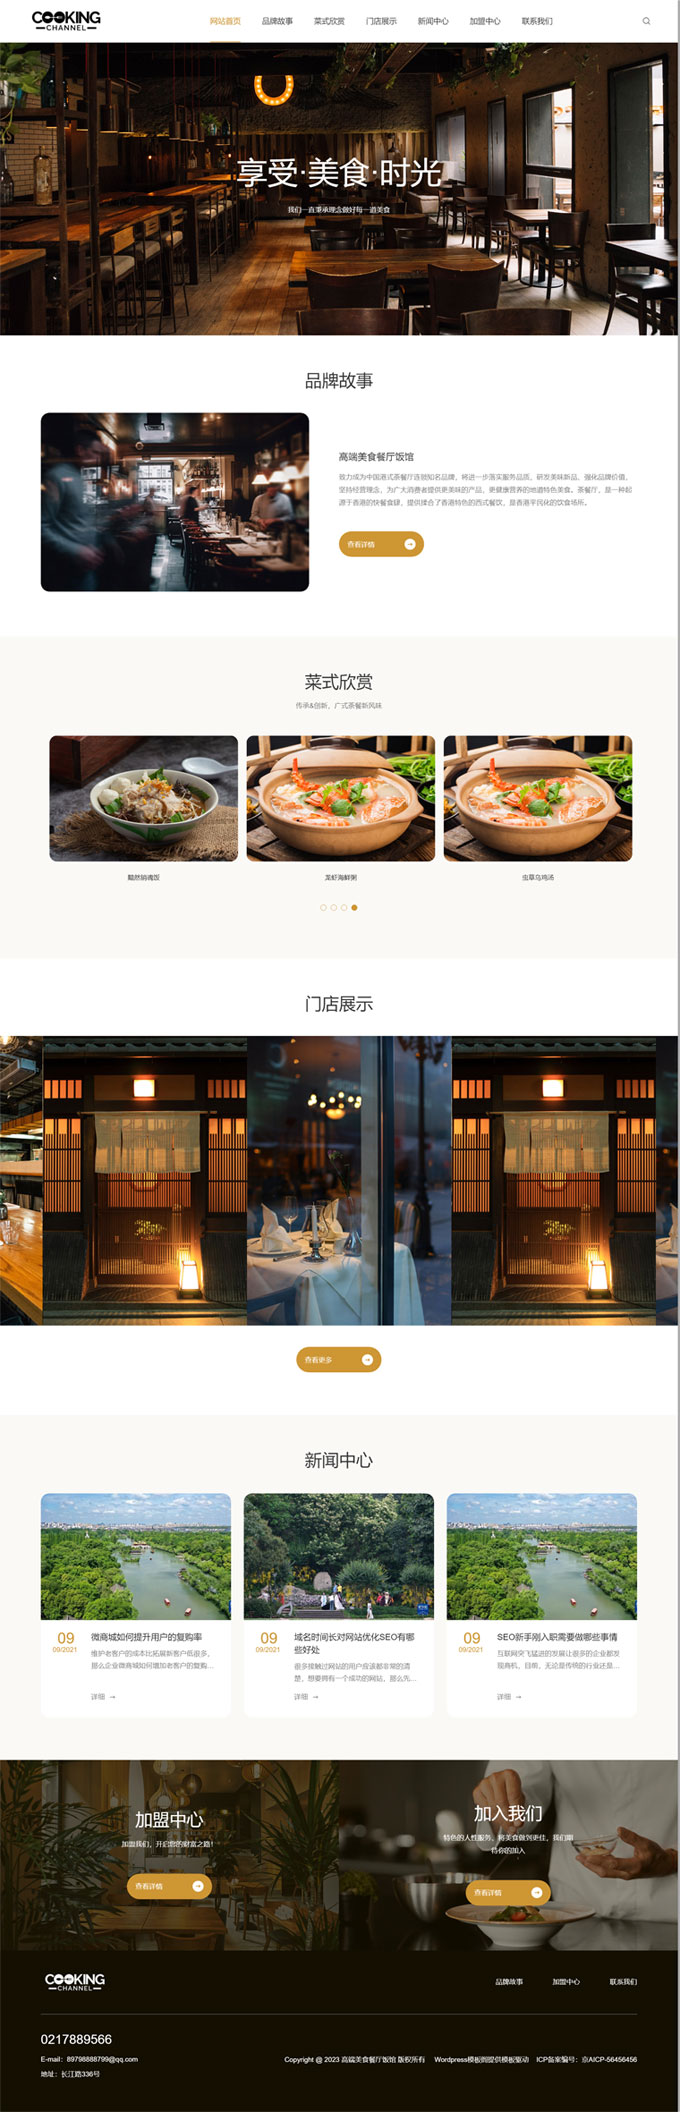 高端美食餐厅饭馆行业网站WordPress模板预览图